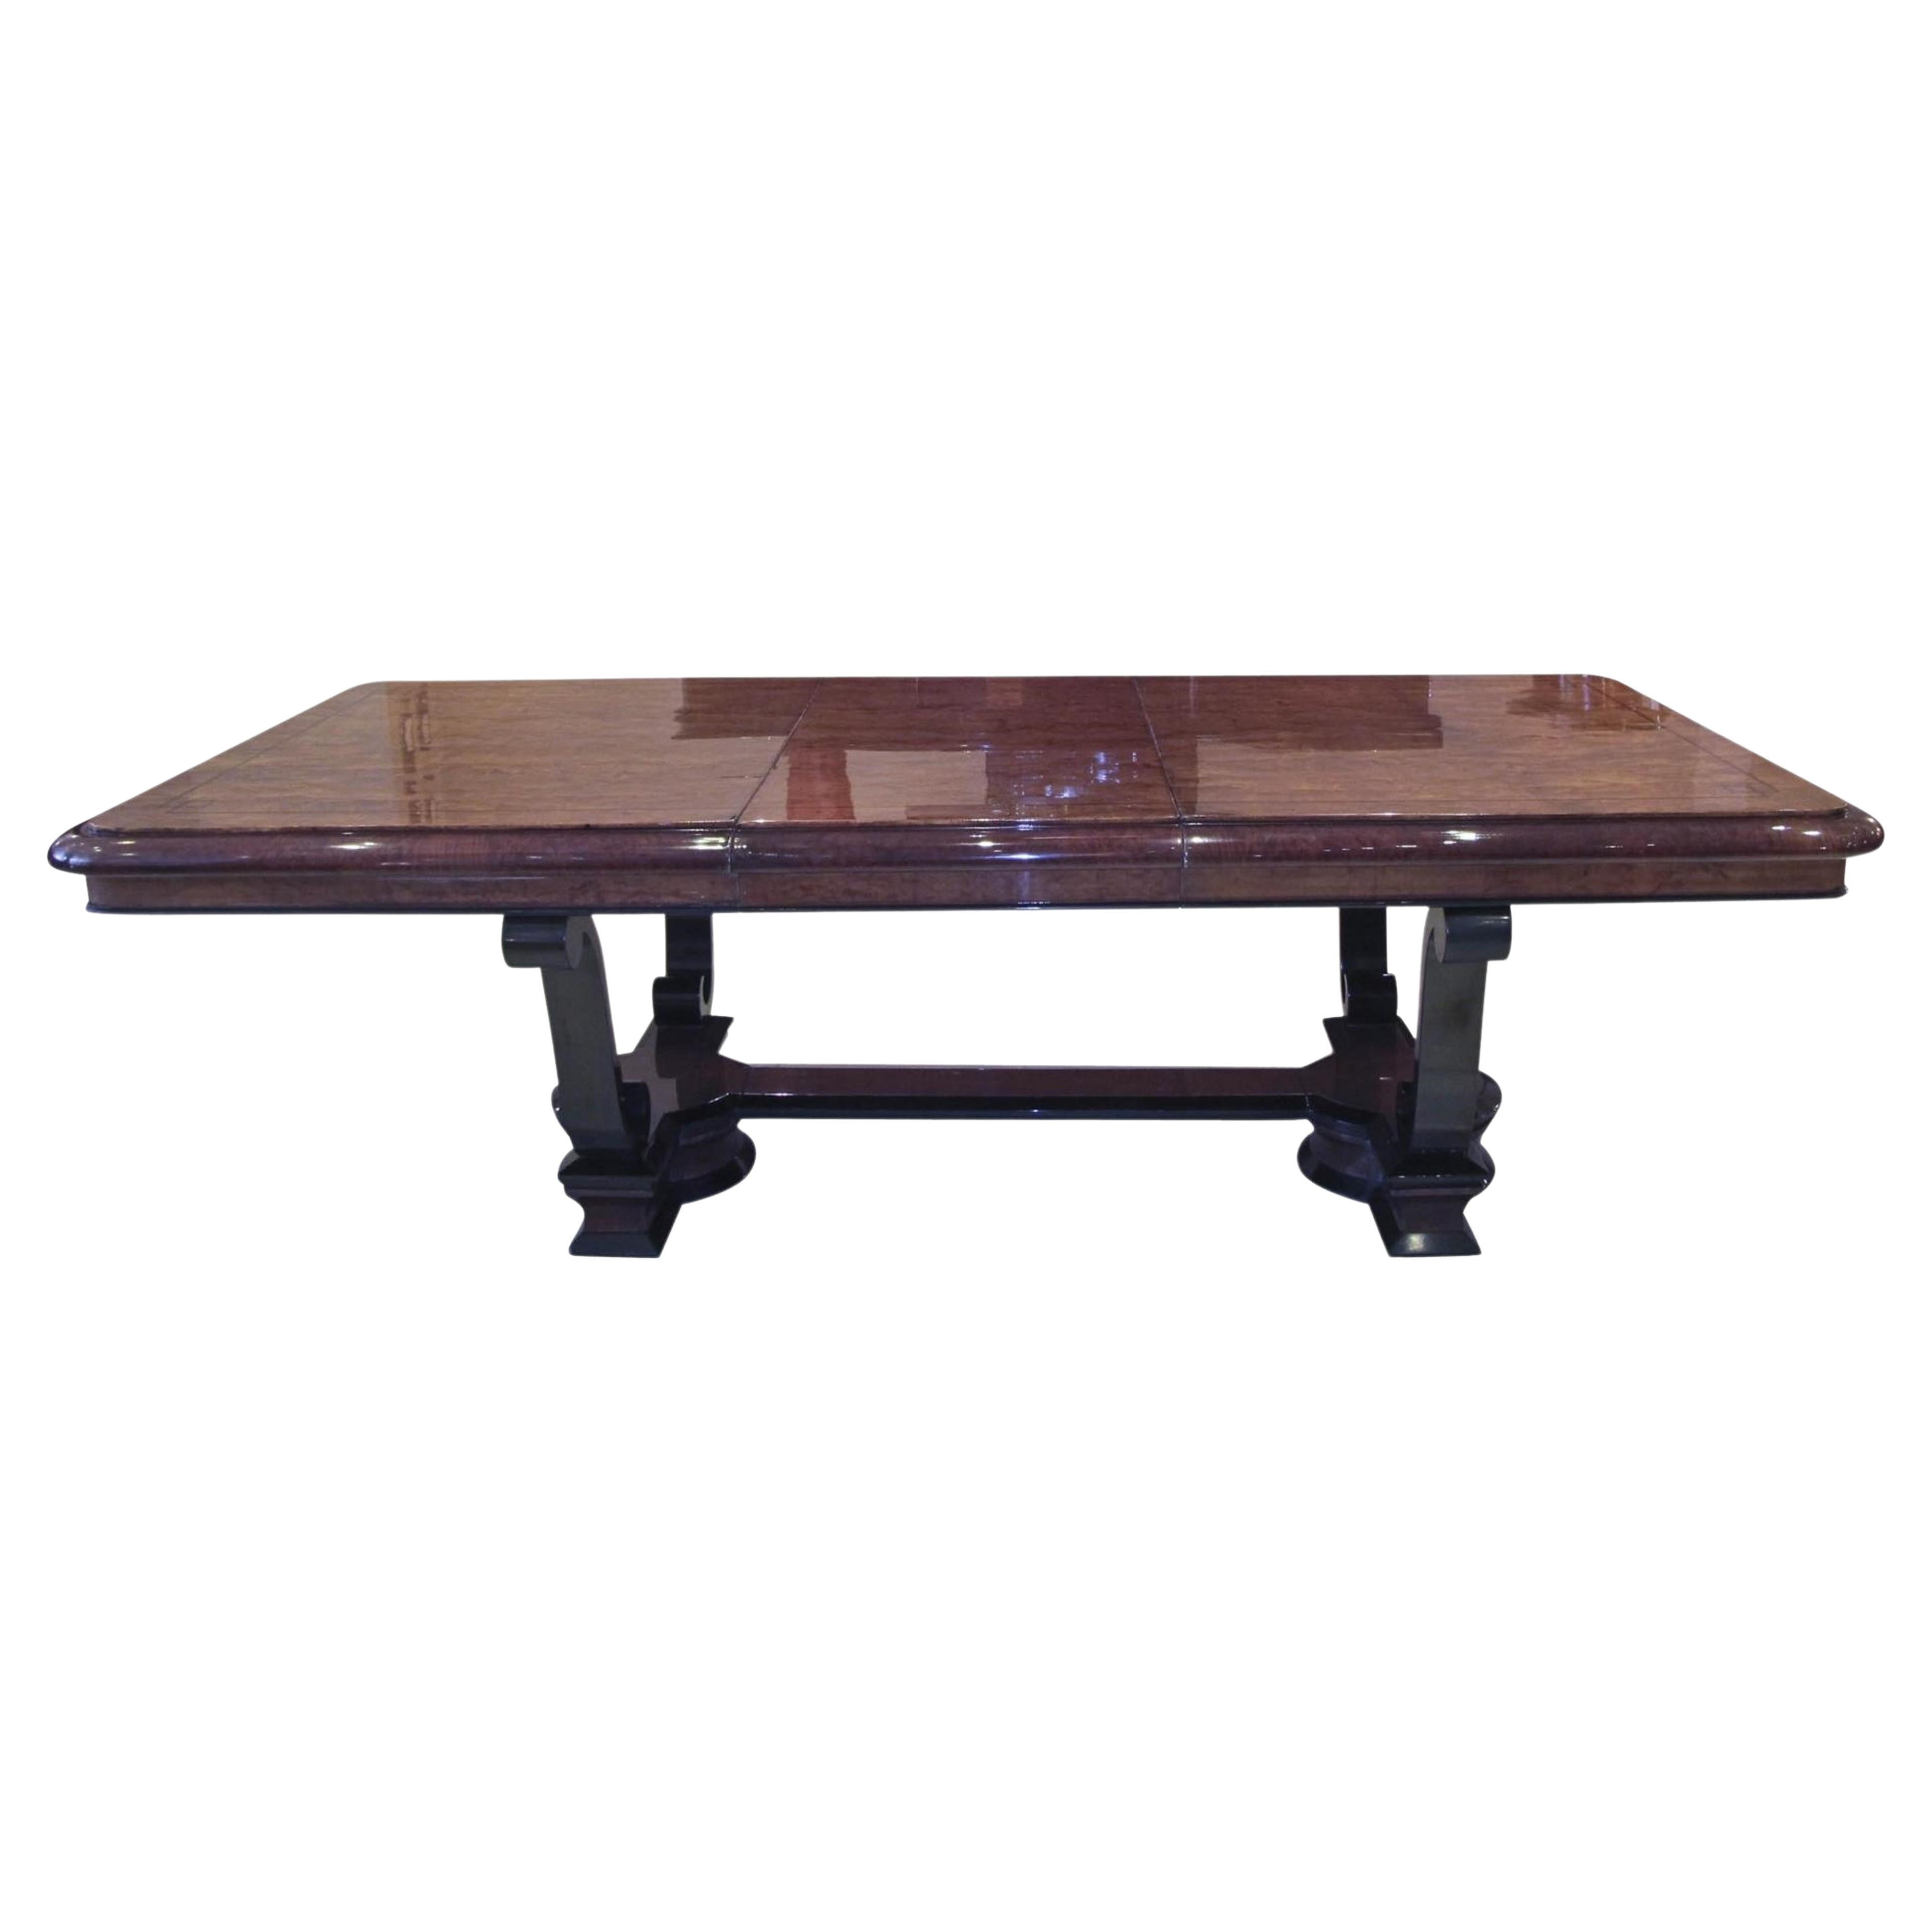 Style de table : Art Déco, 1920, bois, français, 10 personnes